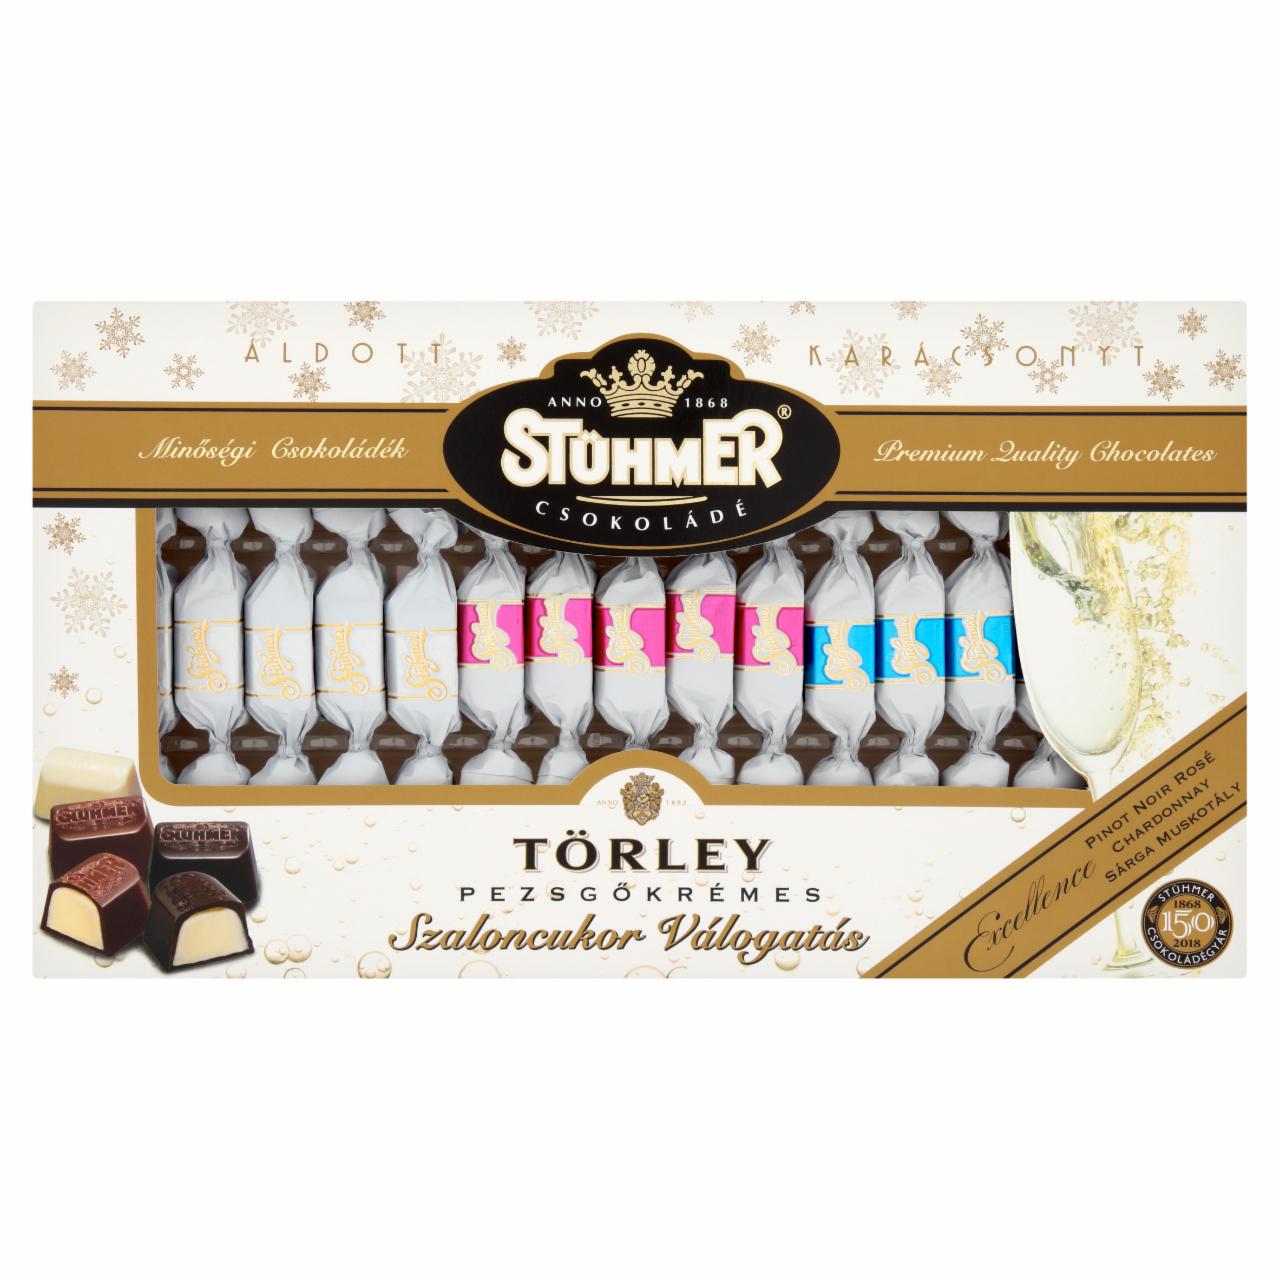 Képek - Stühmer Törley pezsgőkrémes szaloncukor válogatás 170 g